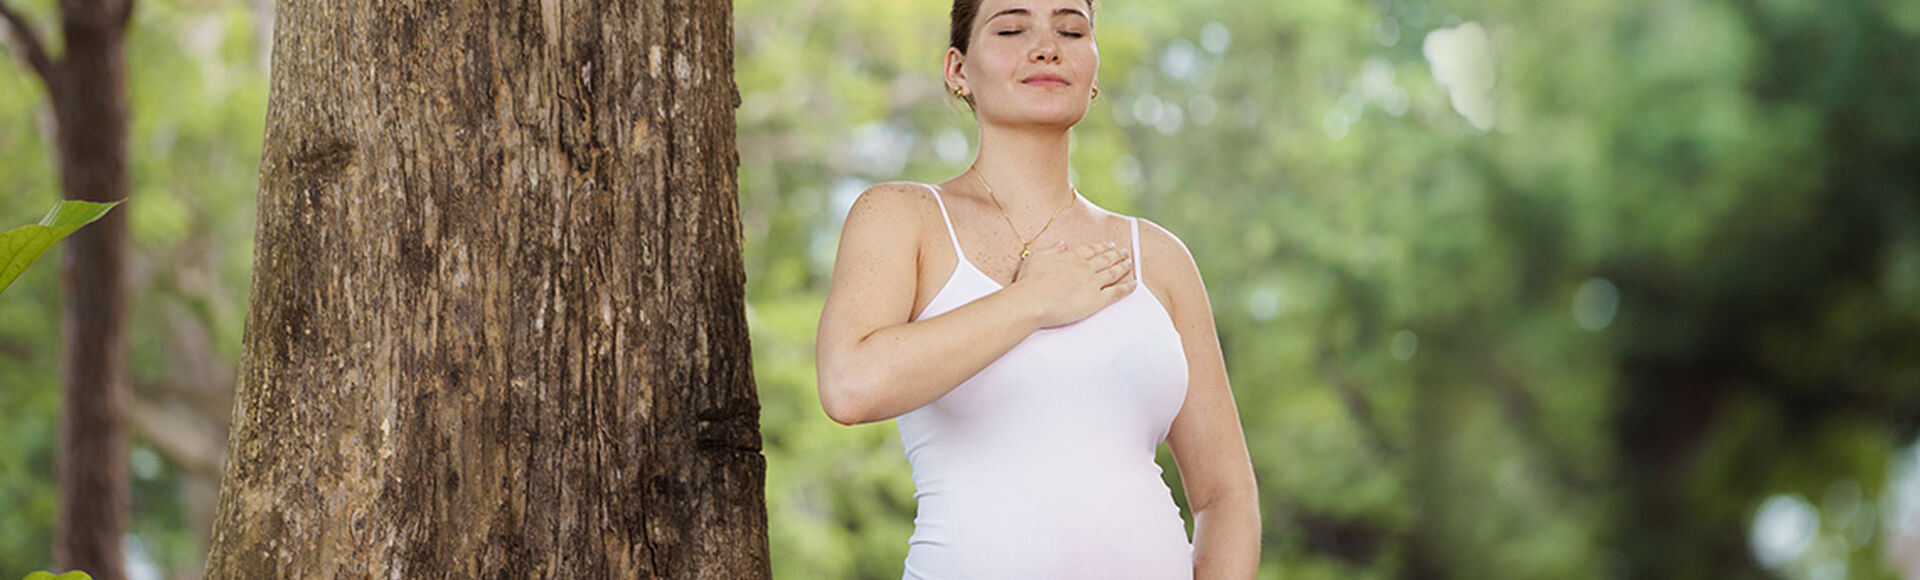 Movimientos en la semana 26 de embarazo